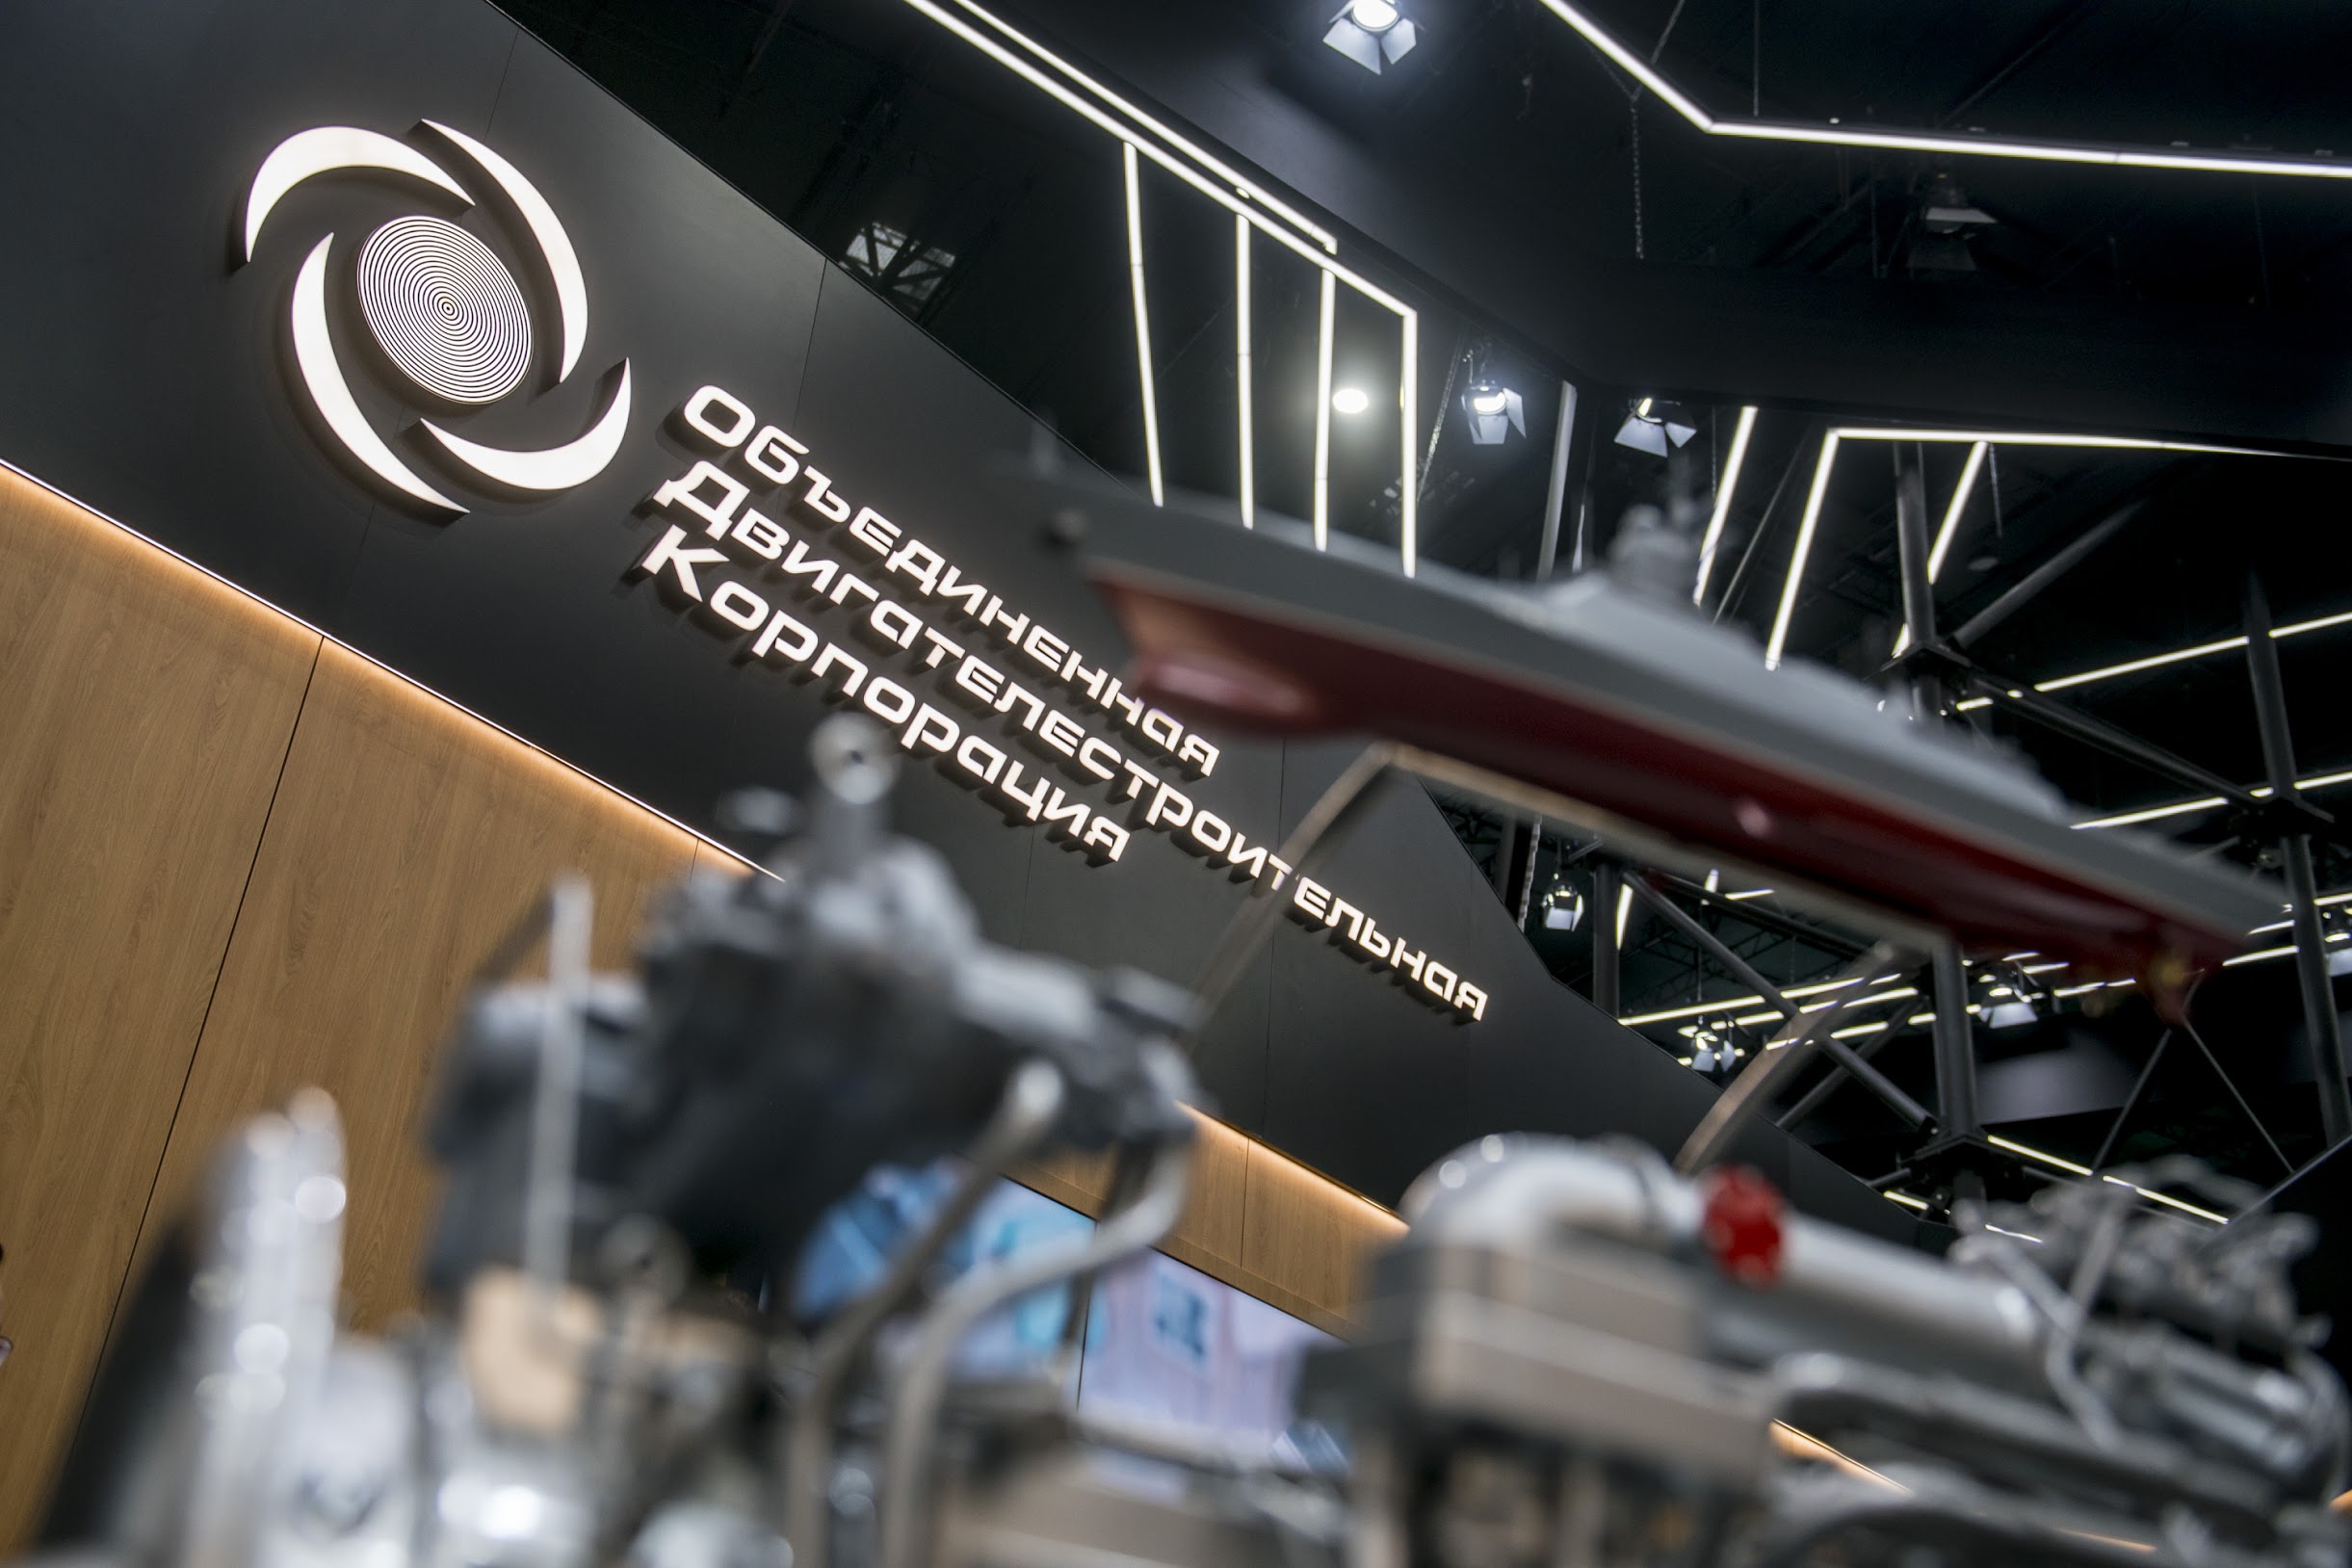 ОДК выступила организатором научно-технической конференции по авиадвигателям